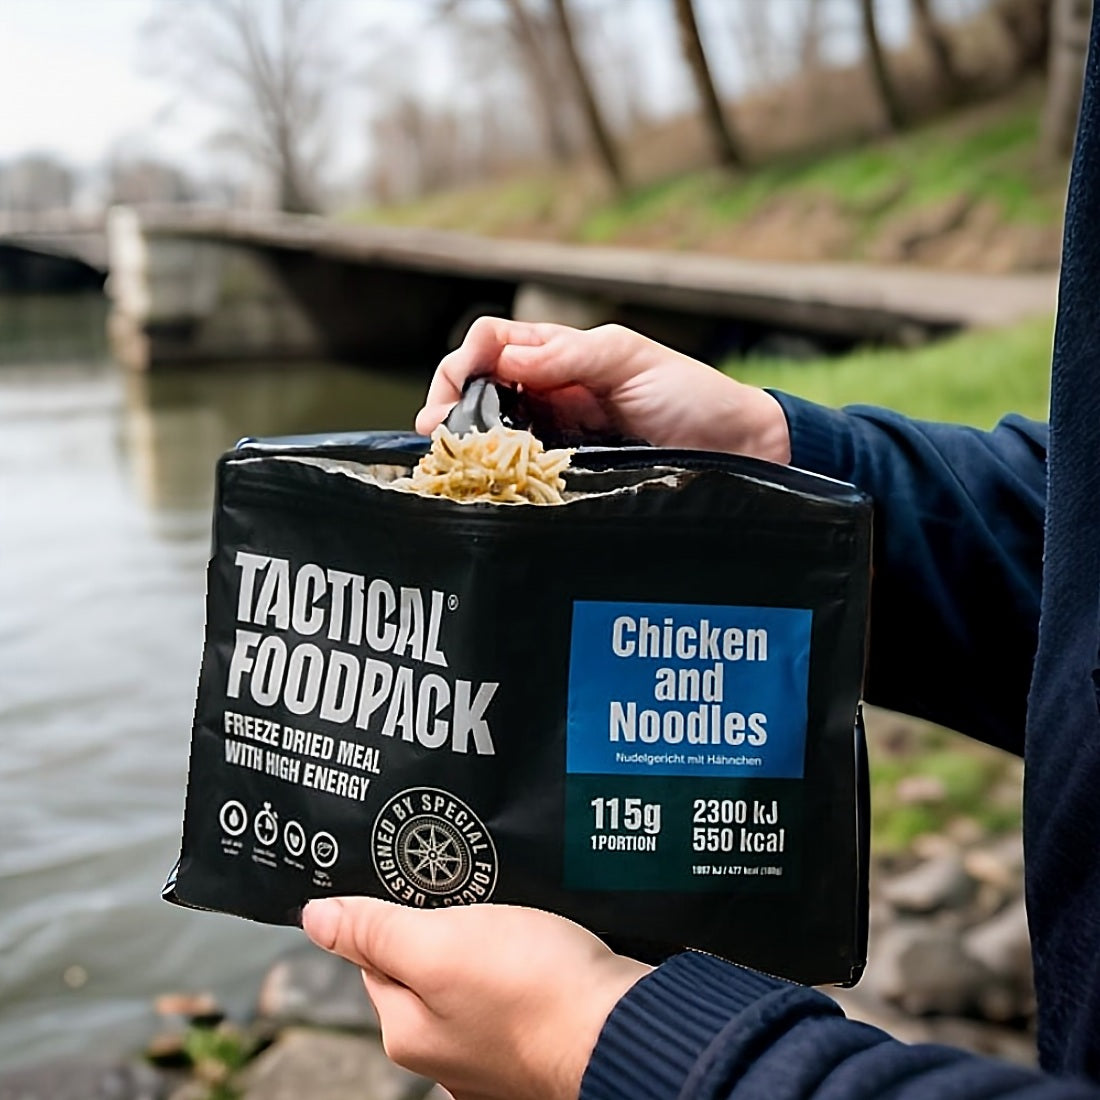 Tactical Foodpack Beef Spaghetti Bolognese - Taktische Notfallnahrung für Spezialkräfte in Krisensituationen